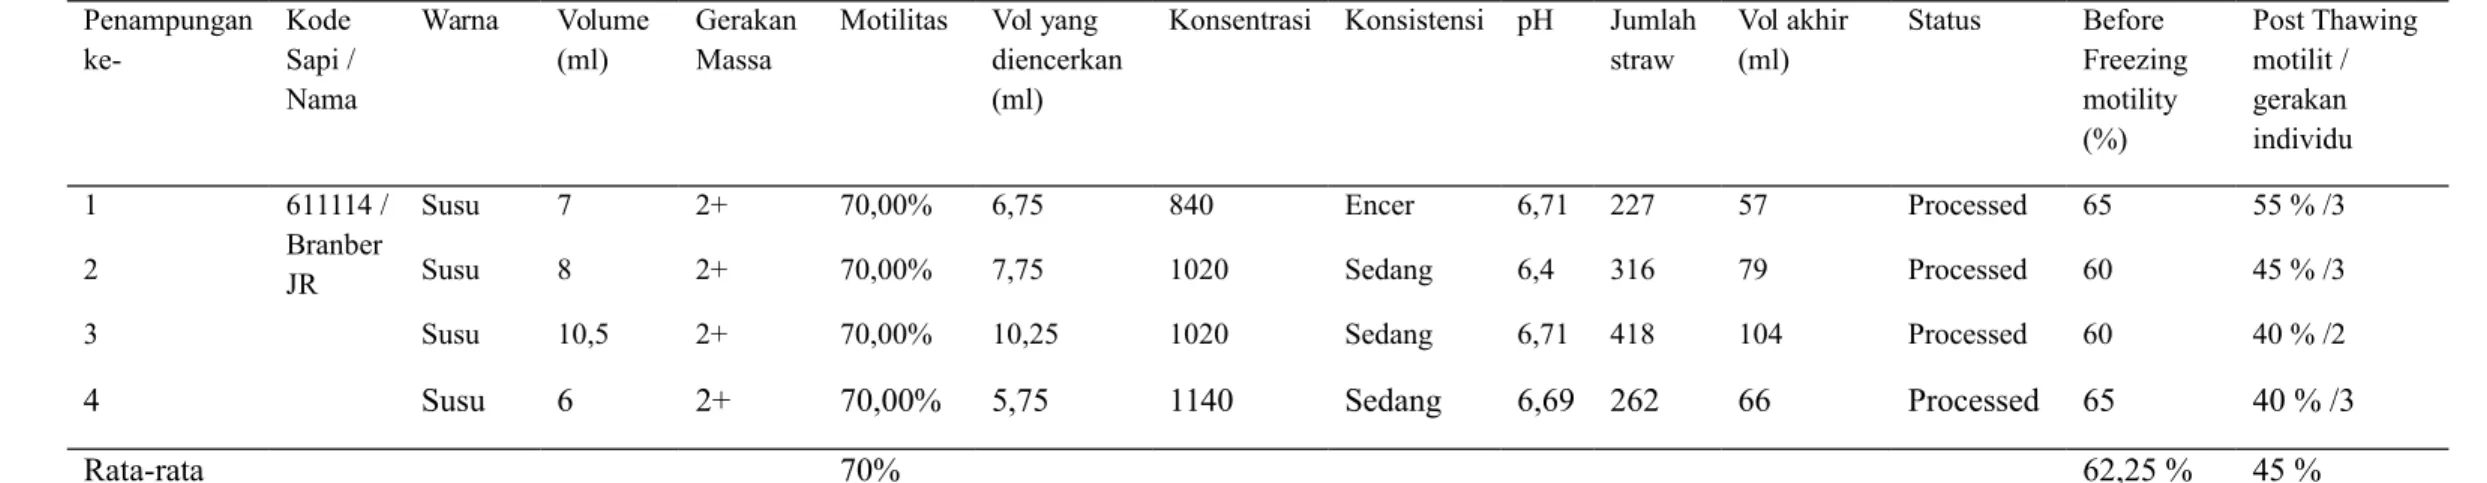 Tabel 13. Hasil Evaluasi Semen Segar, Semen Before Freezing, dan Semen Post Thawing Motility dari sapi simmental dengan nama  Time dengan usia 4 tahun